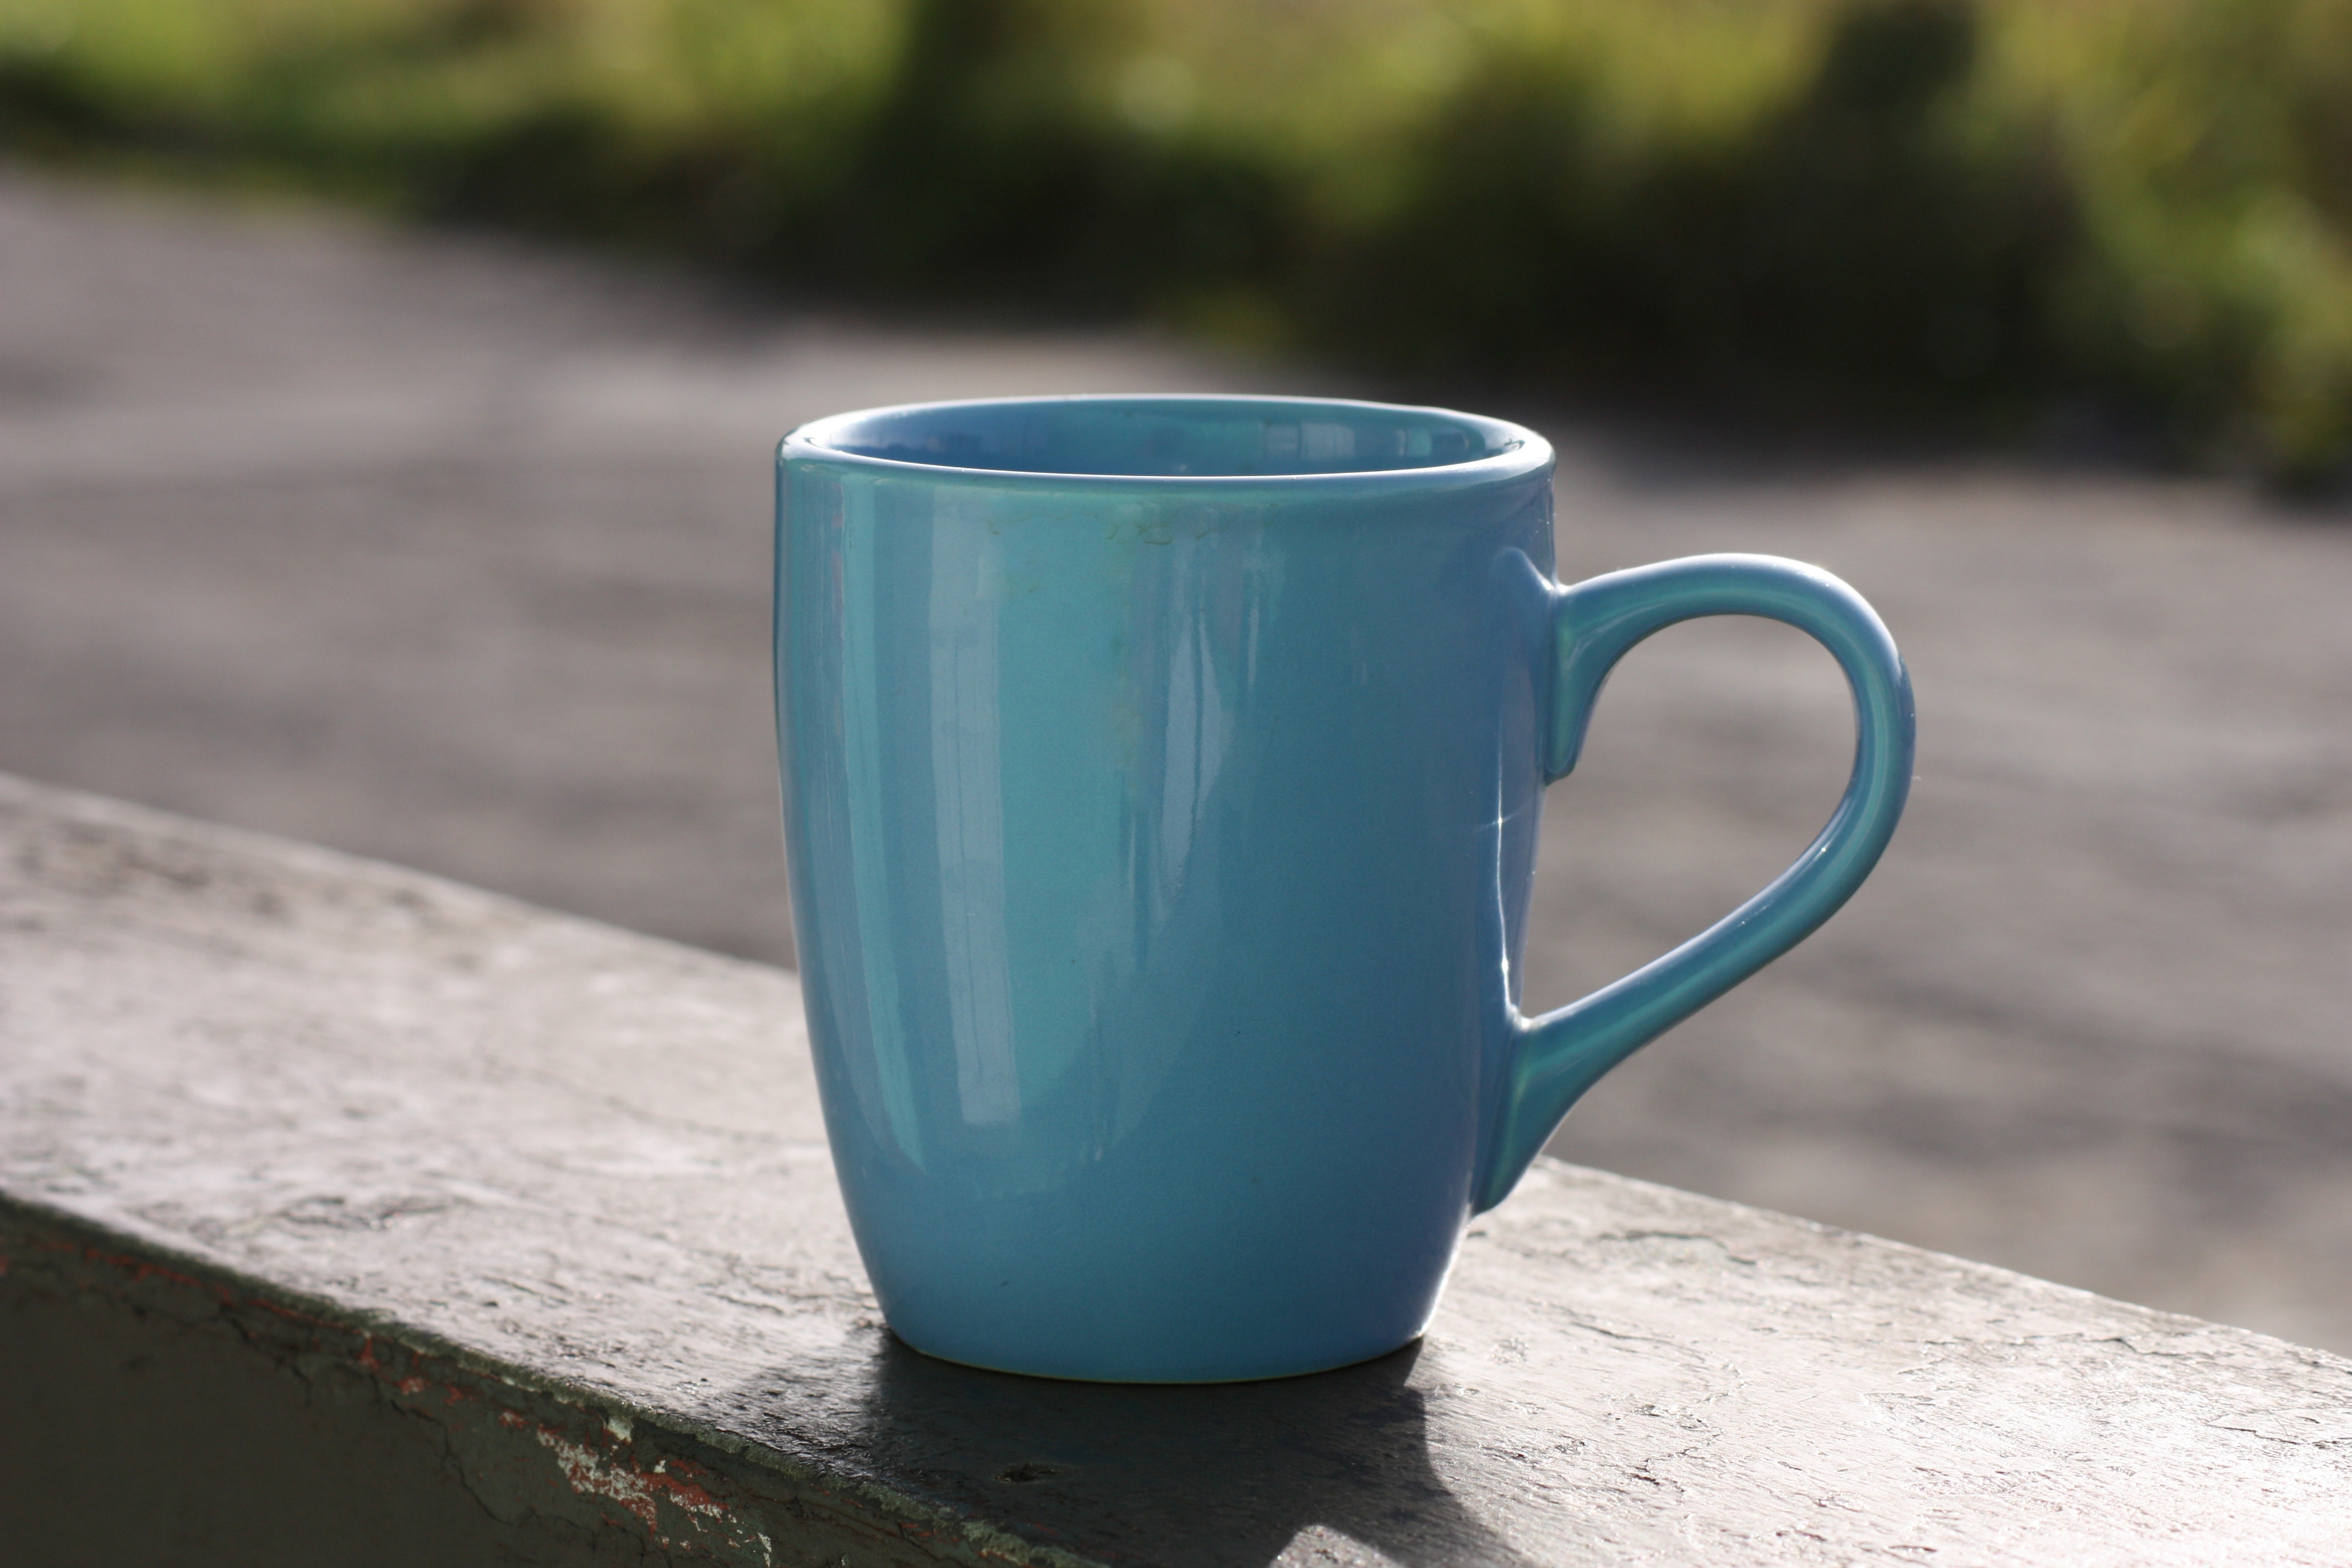 blue ceramic mug